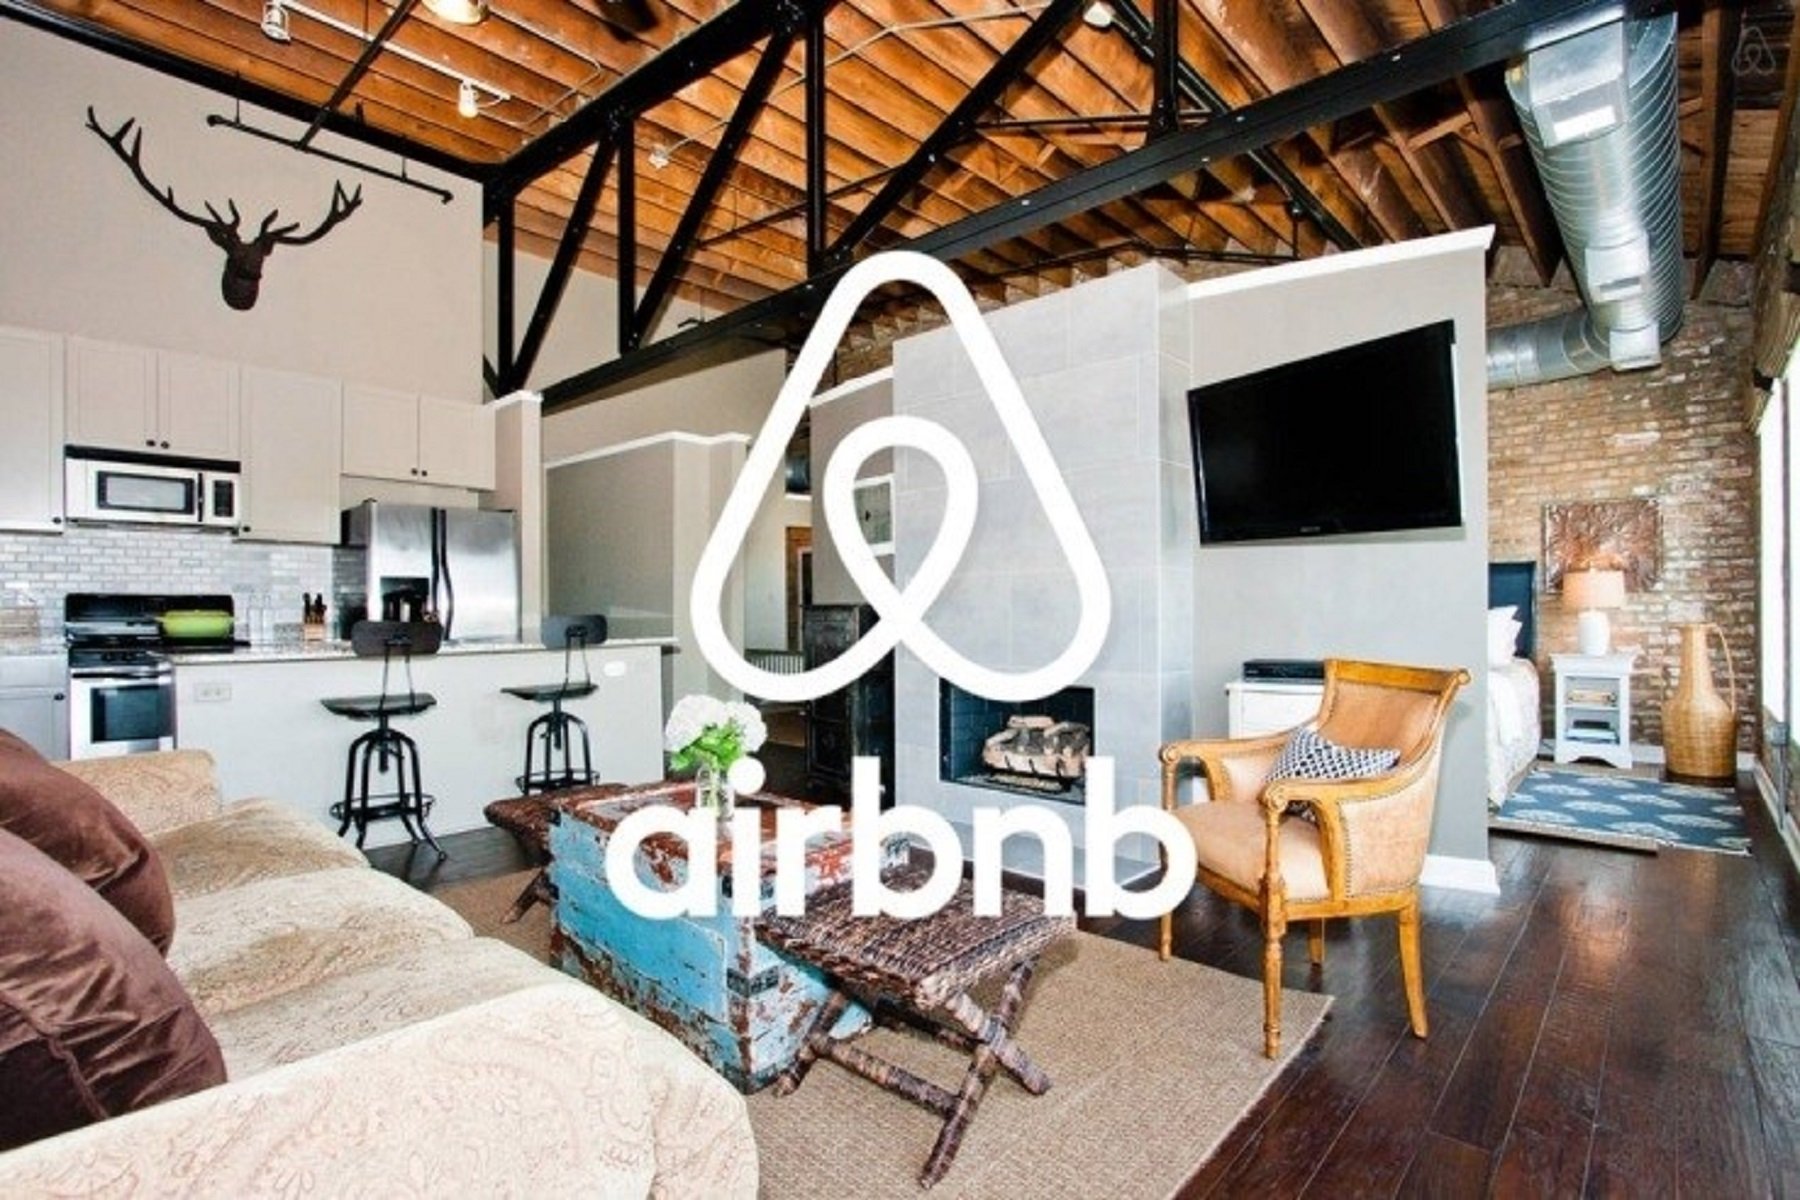 Airbnb, sancionado con 300.000 euros por una oferta ilegal en Mallorca